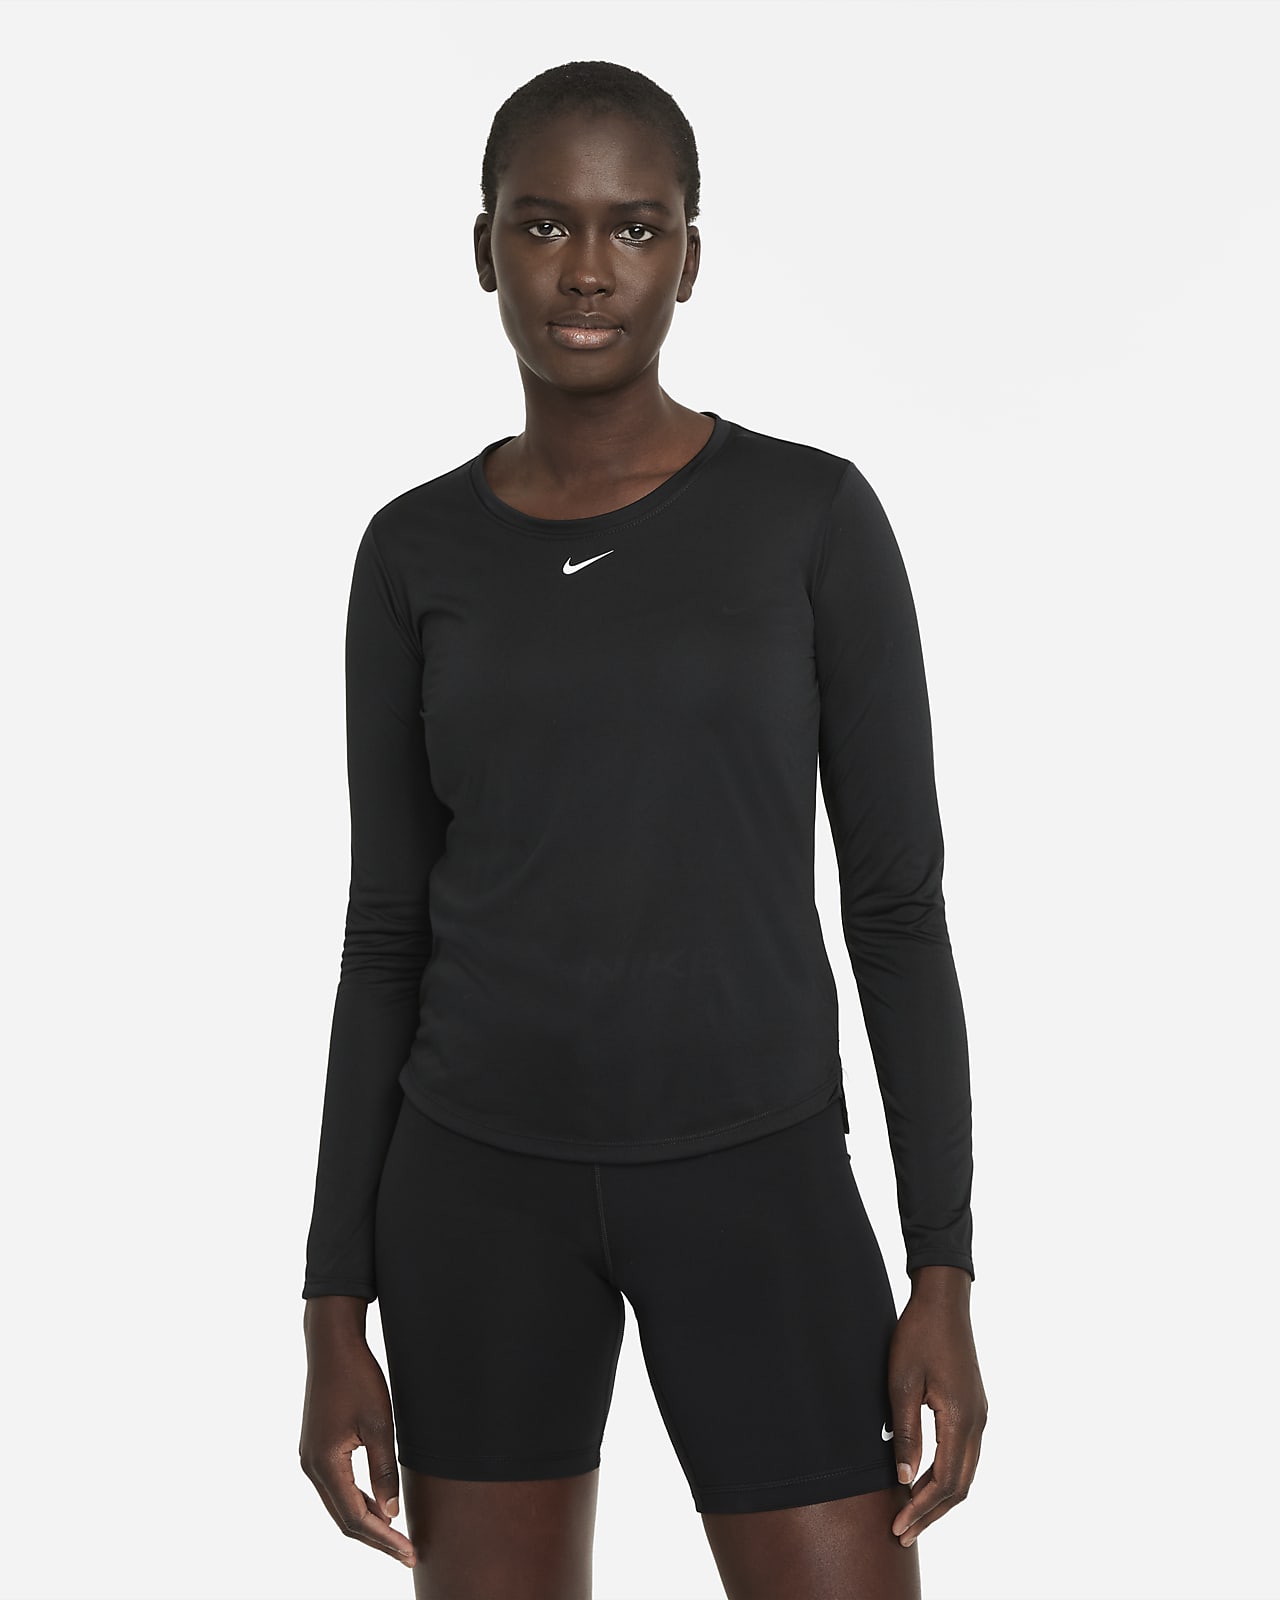 Nike Dri-FIT One langermet overdel med standard passform til dame